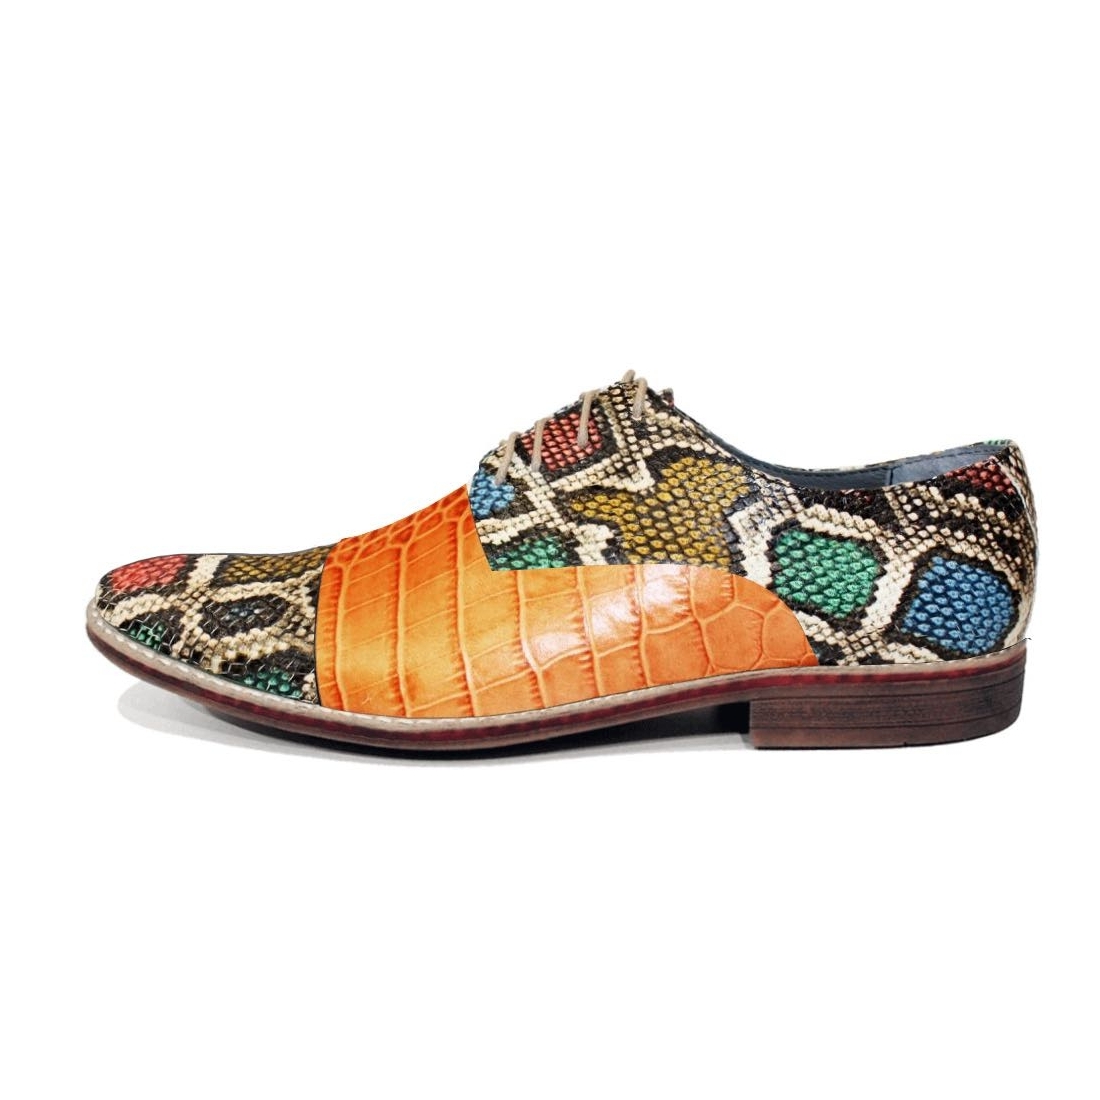 Modello Gadello - Zapatos Clásicos - Handmade Colorful Italian Leather Shoes